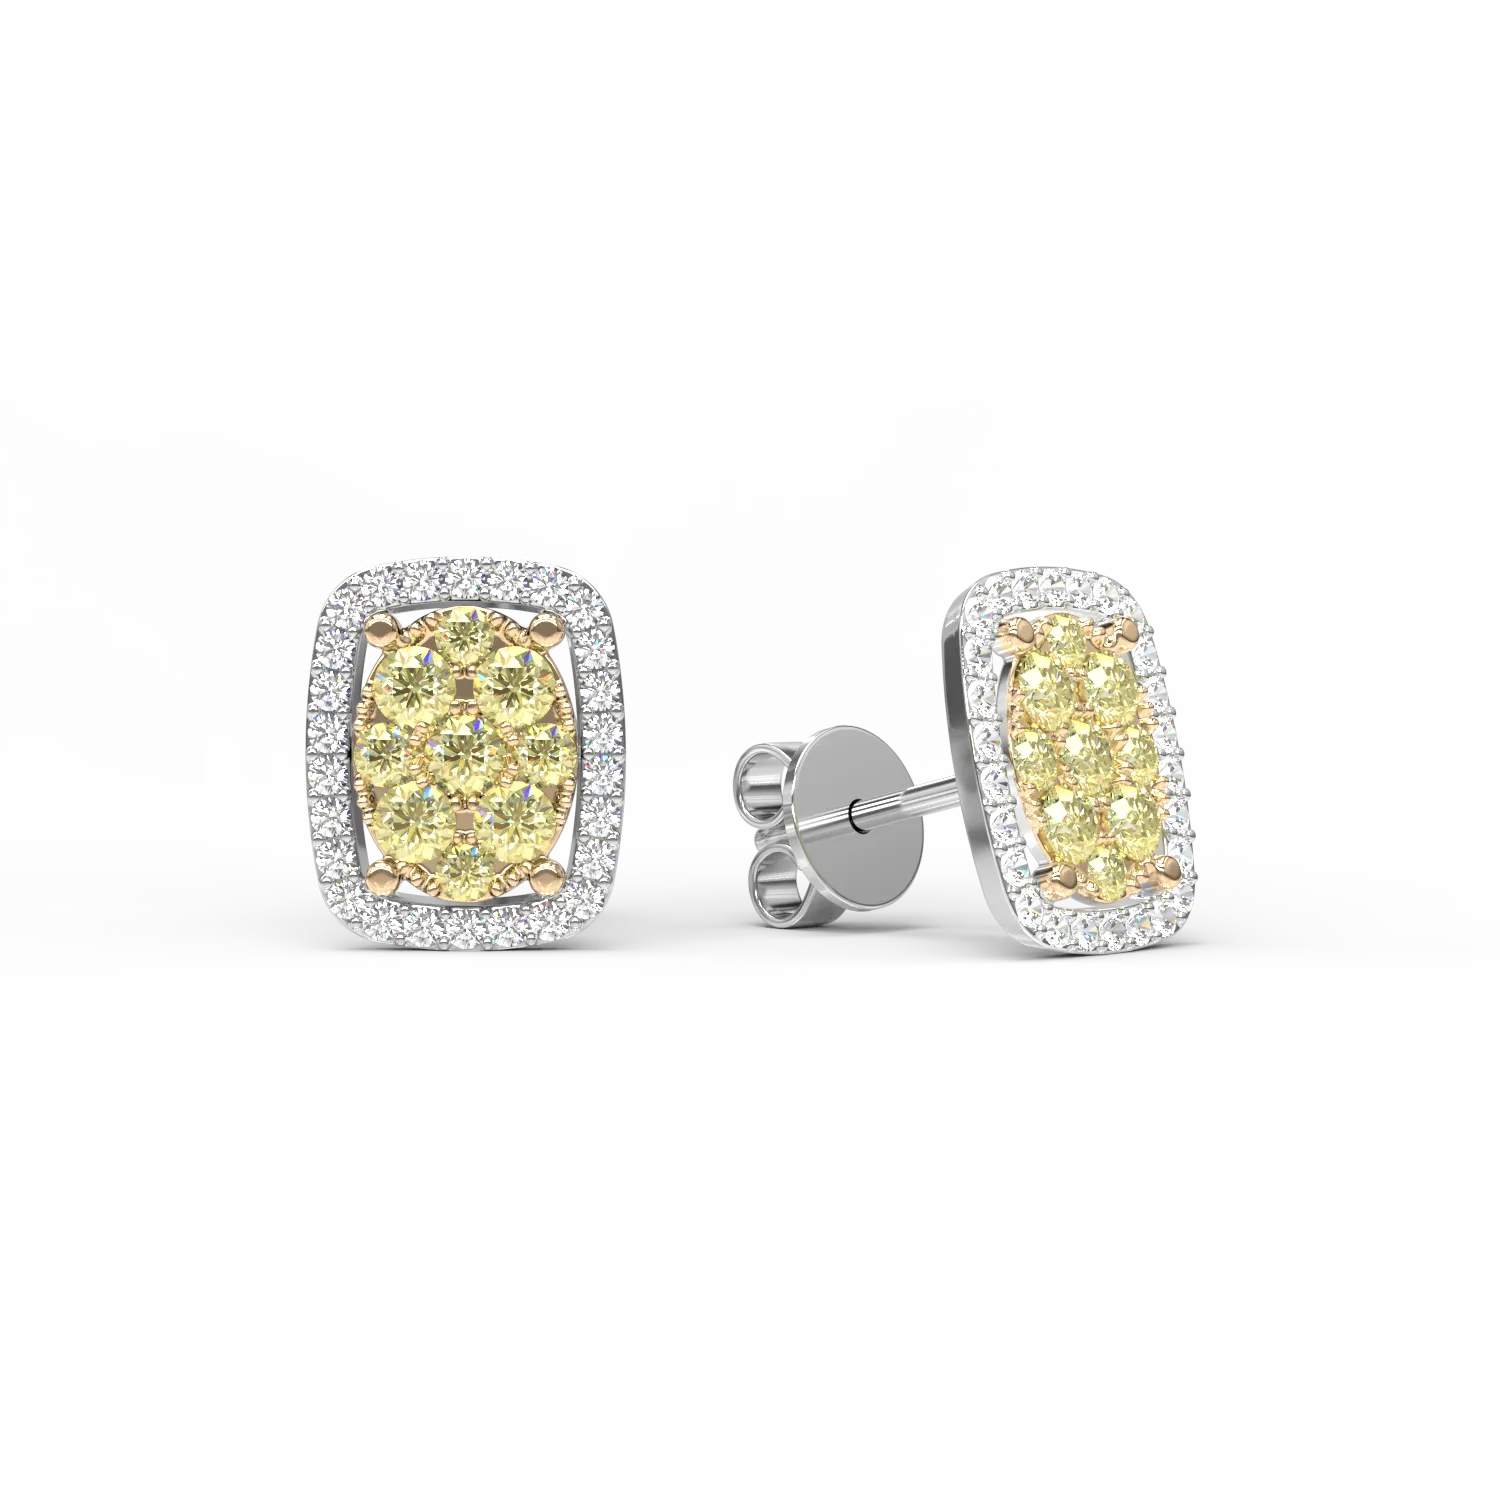 Kolczyki z 18K białego złota z żółtymi diamentami o masie 0.335ct i diamentami o masie 0.138ct